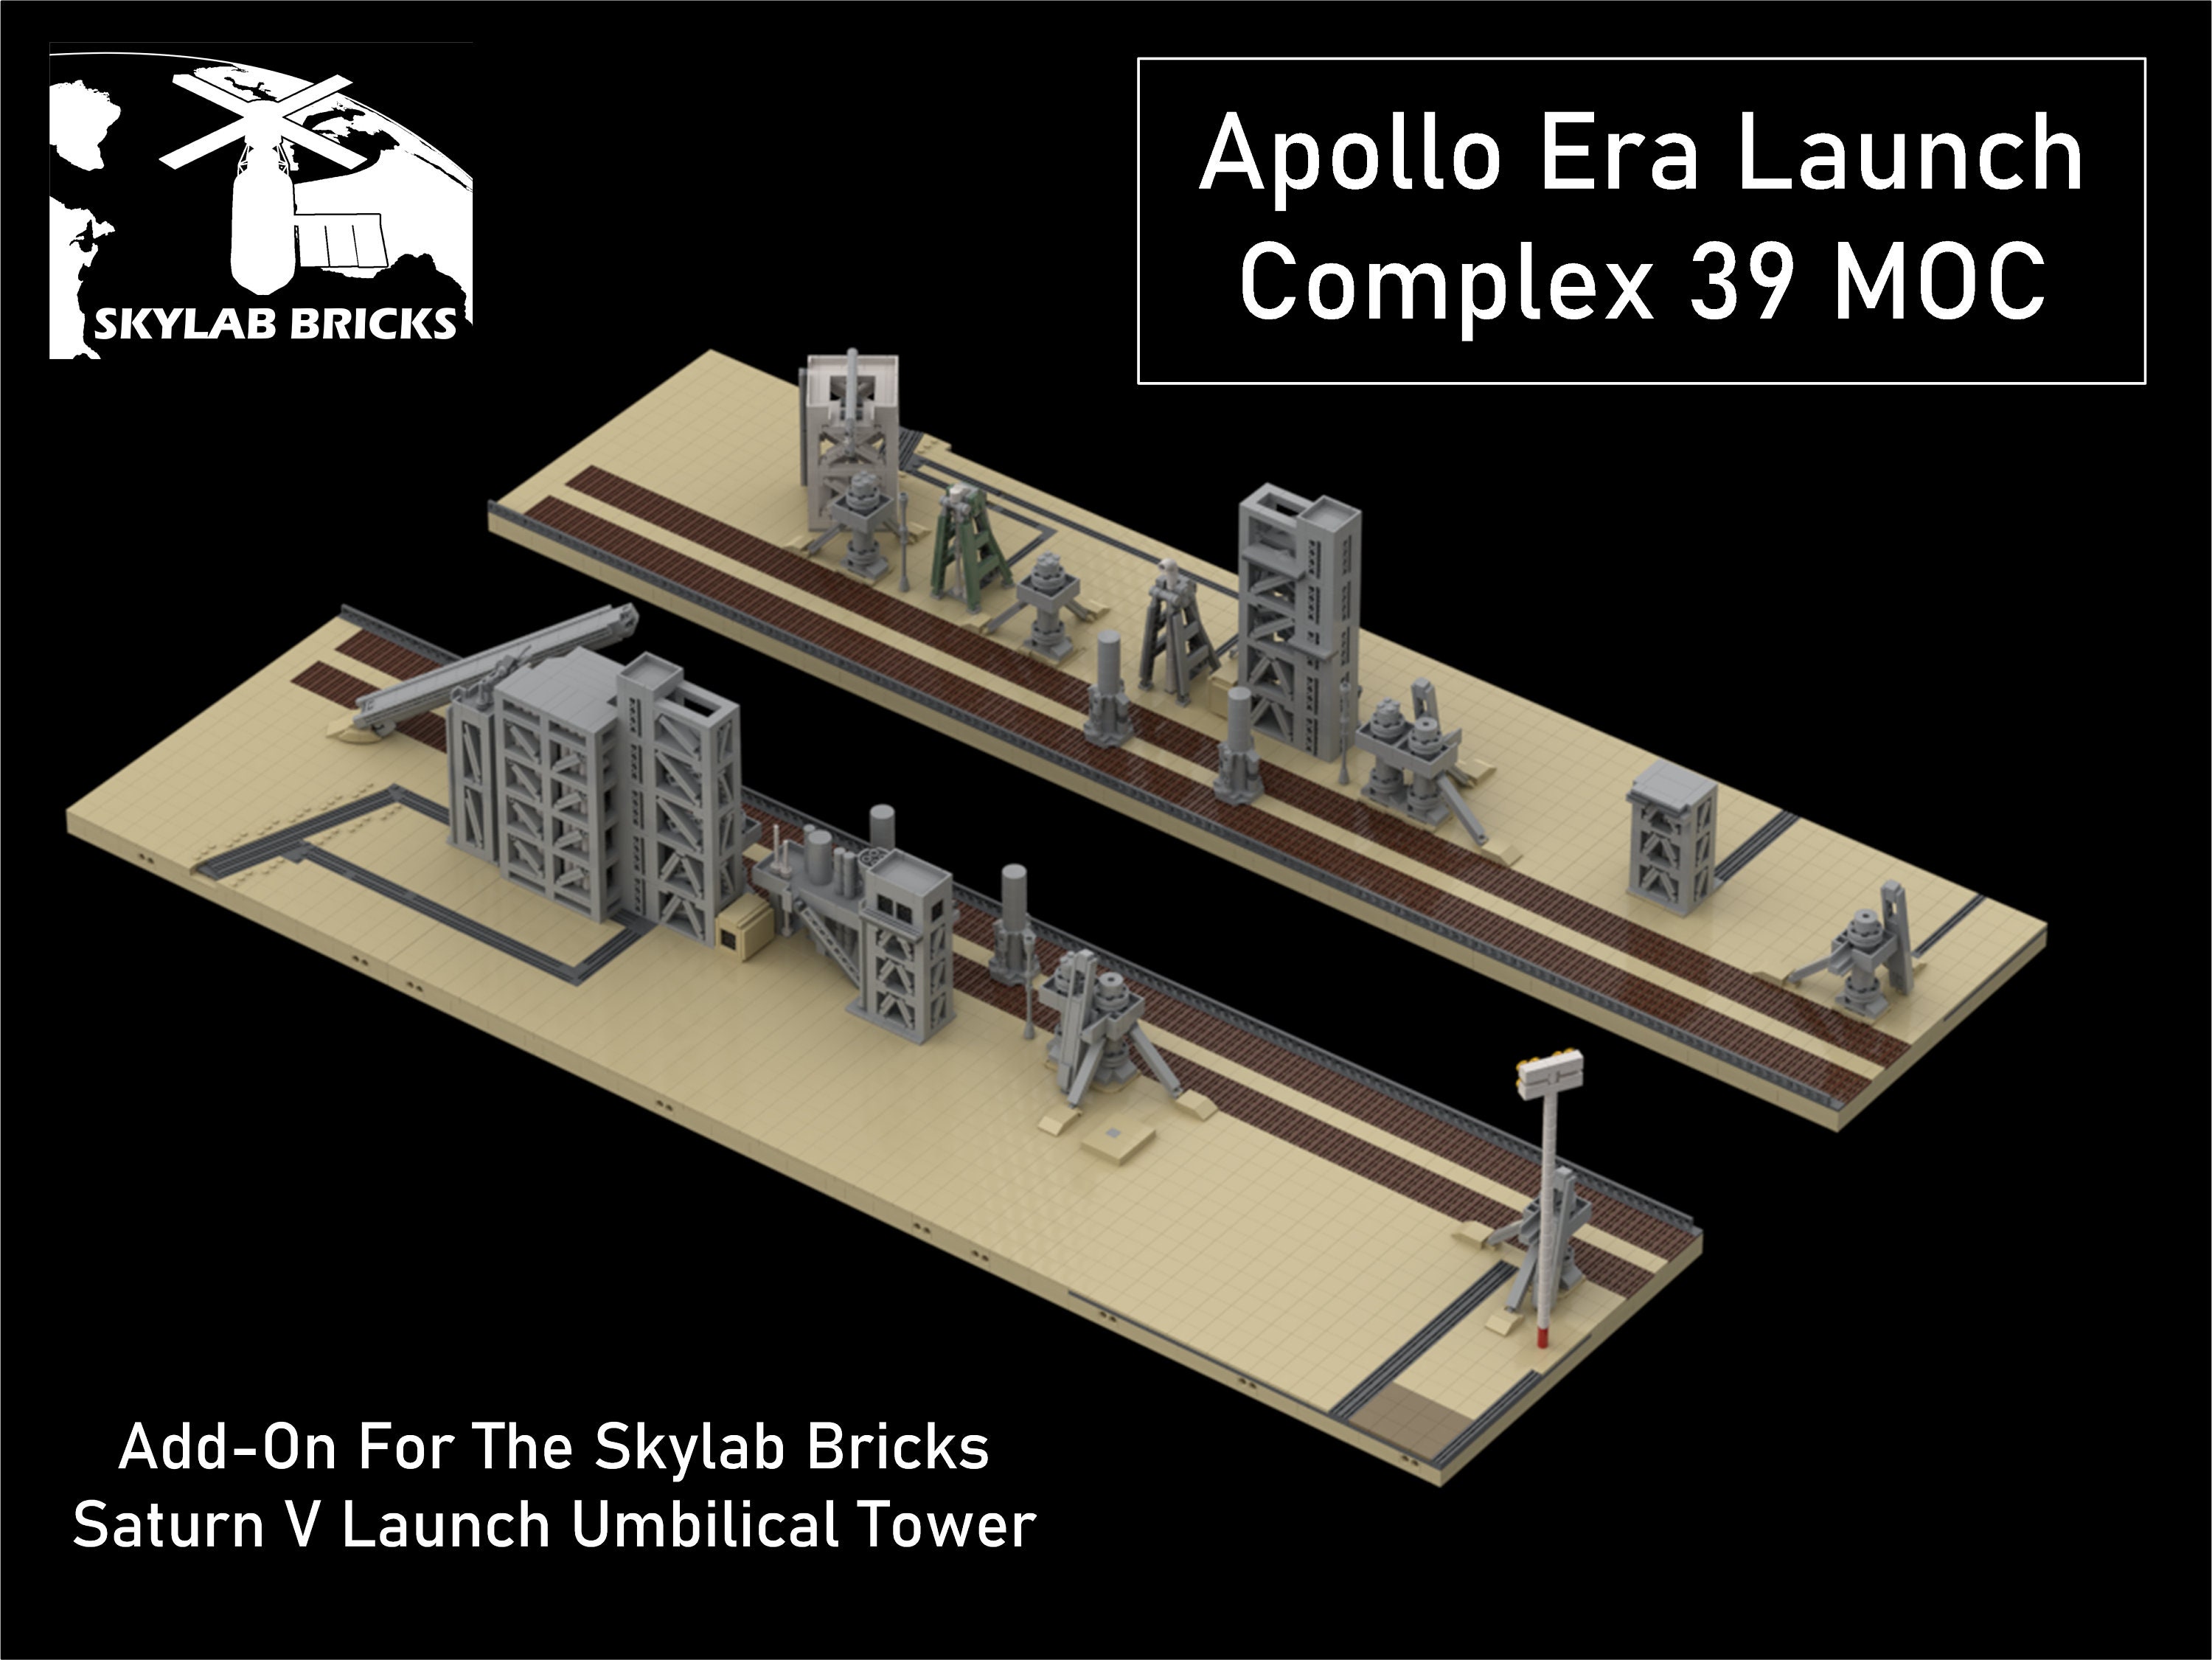 lager brochure vejviser Instructions for Launch Complex 39 MOC for Saturn V LUT - Etsy